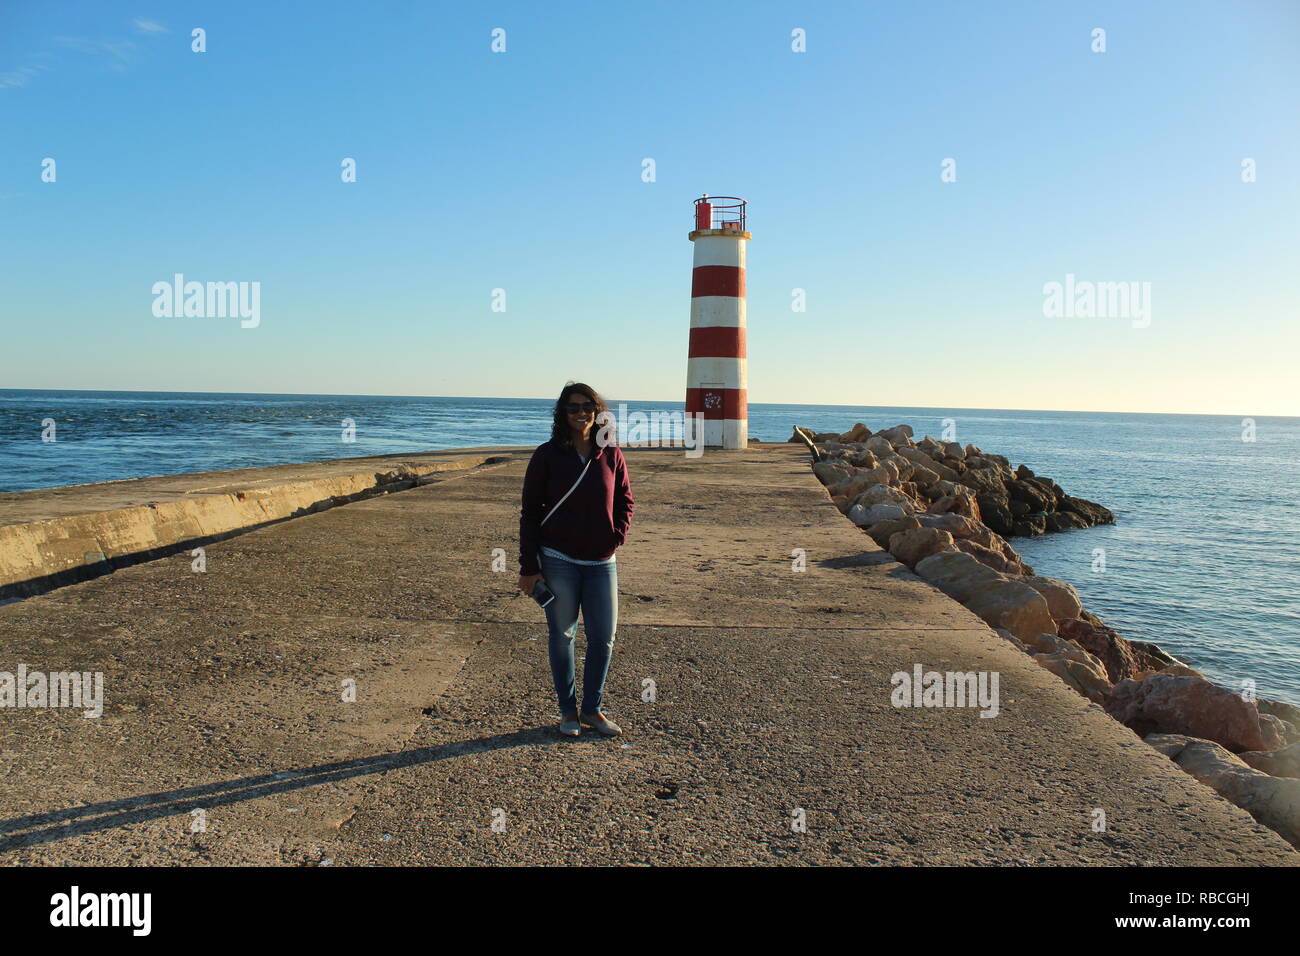 Faro, portugal Stock Photo